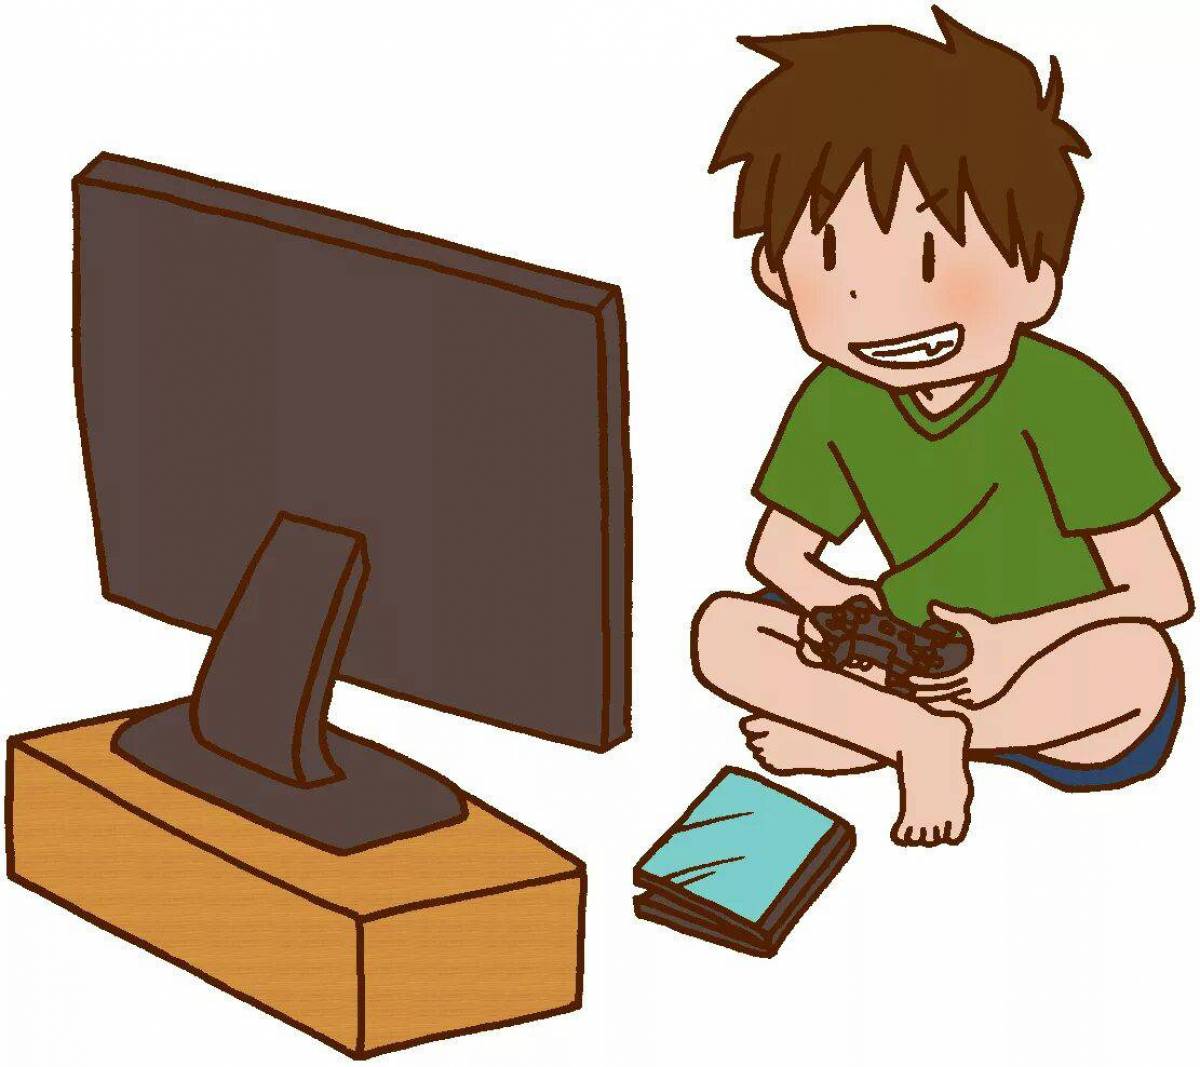 Had kid game. Мальчик играющий в компьютерную игру. Дети играющие в компьютерные игры. Компьютер картинка для детей. Компьютер мультяшный.